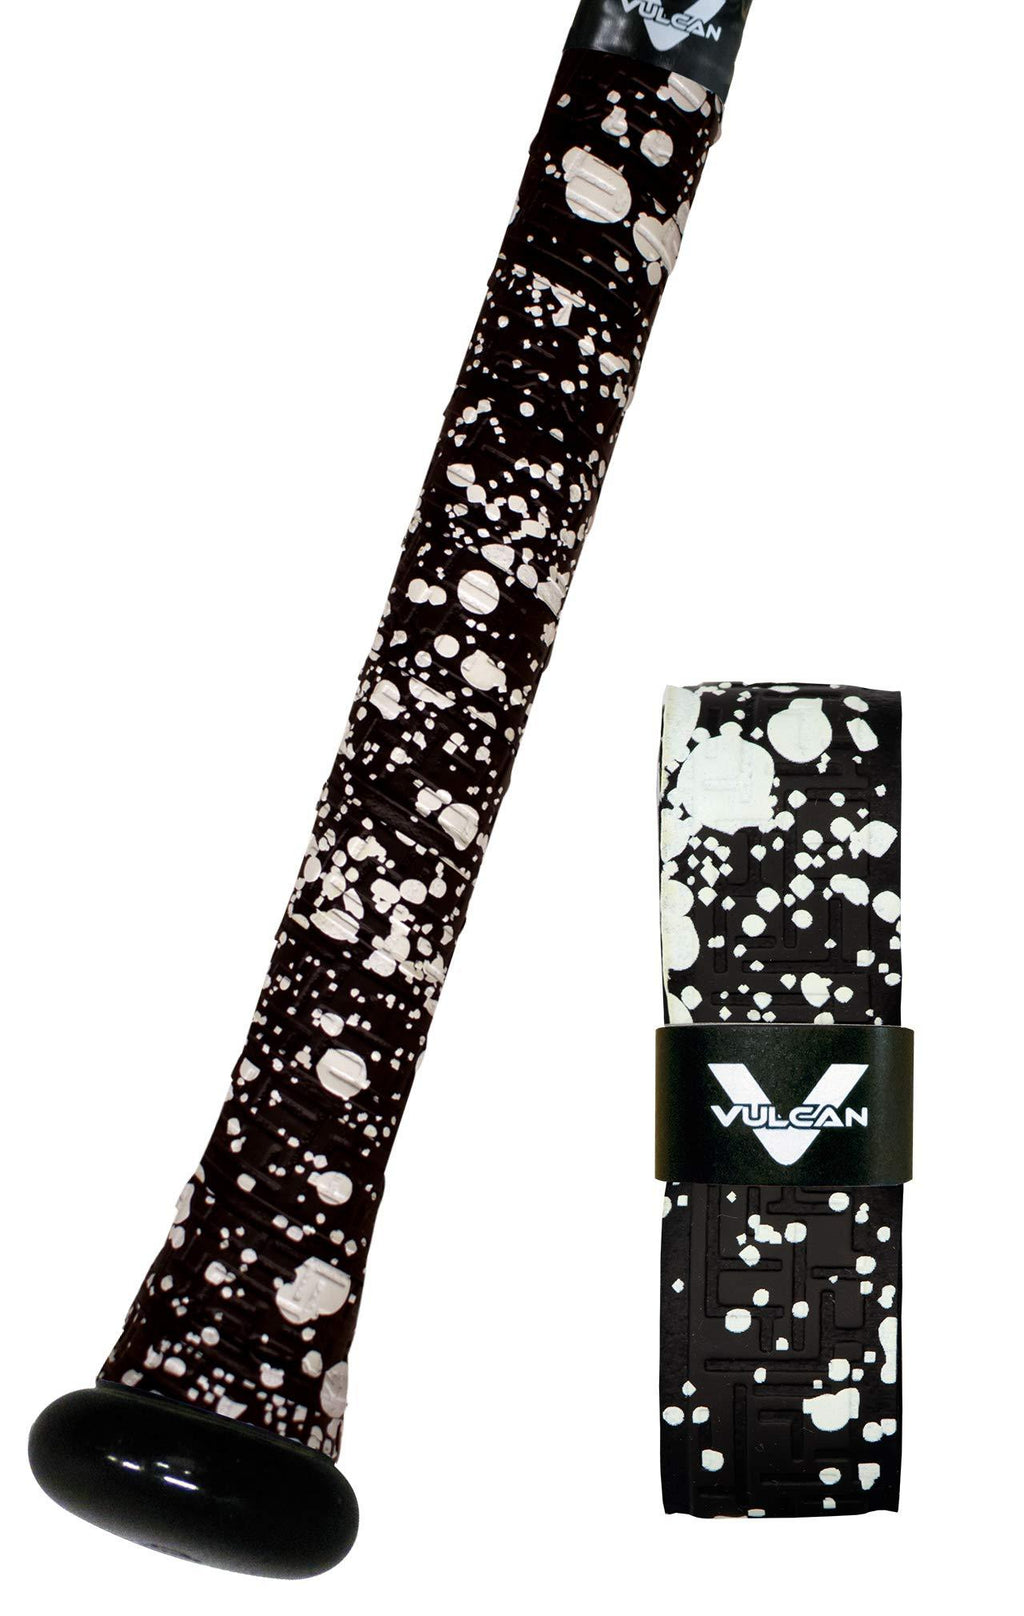 [AUSTRALIA] - Vulcan Sporting Goods Co. 0.50mm Bat Grips/Black Splatter (V050-BLKSPLT) 